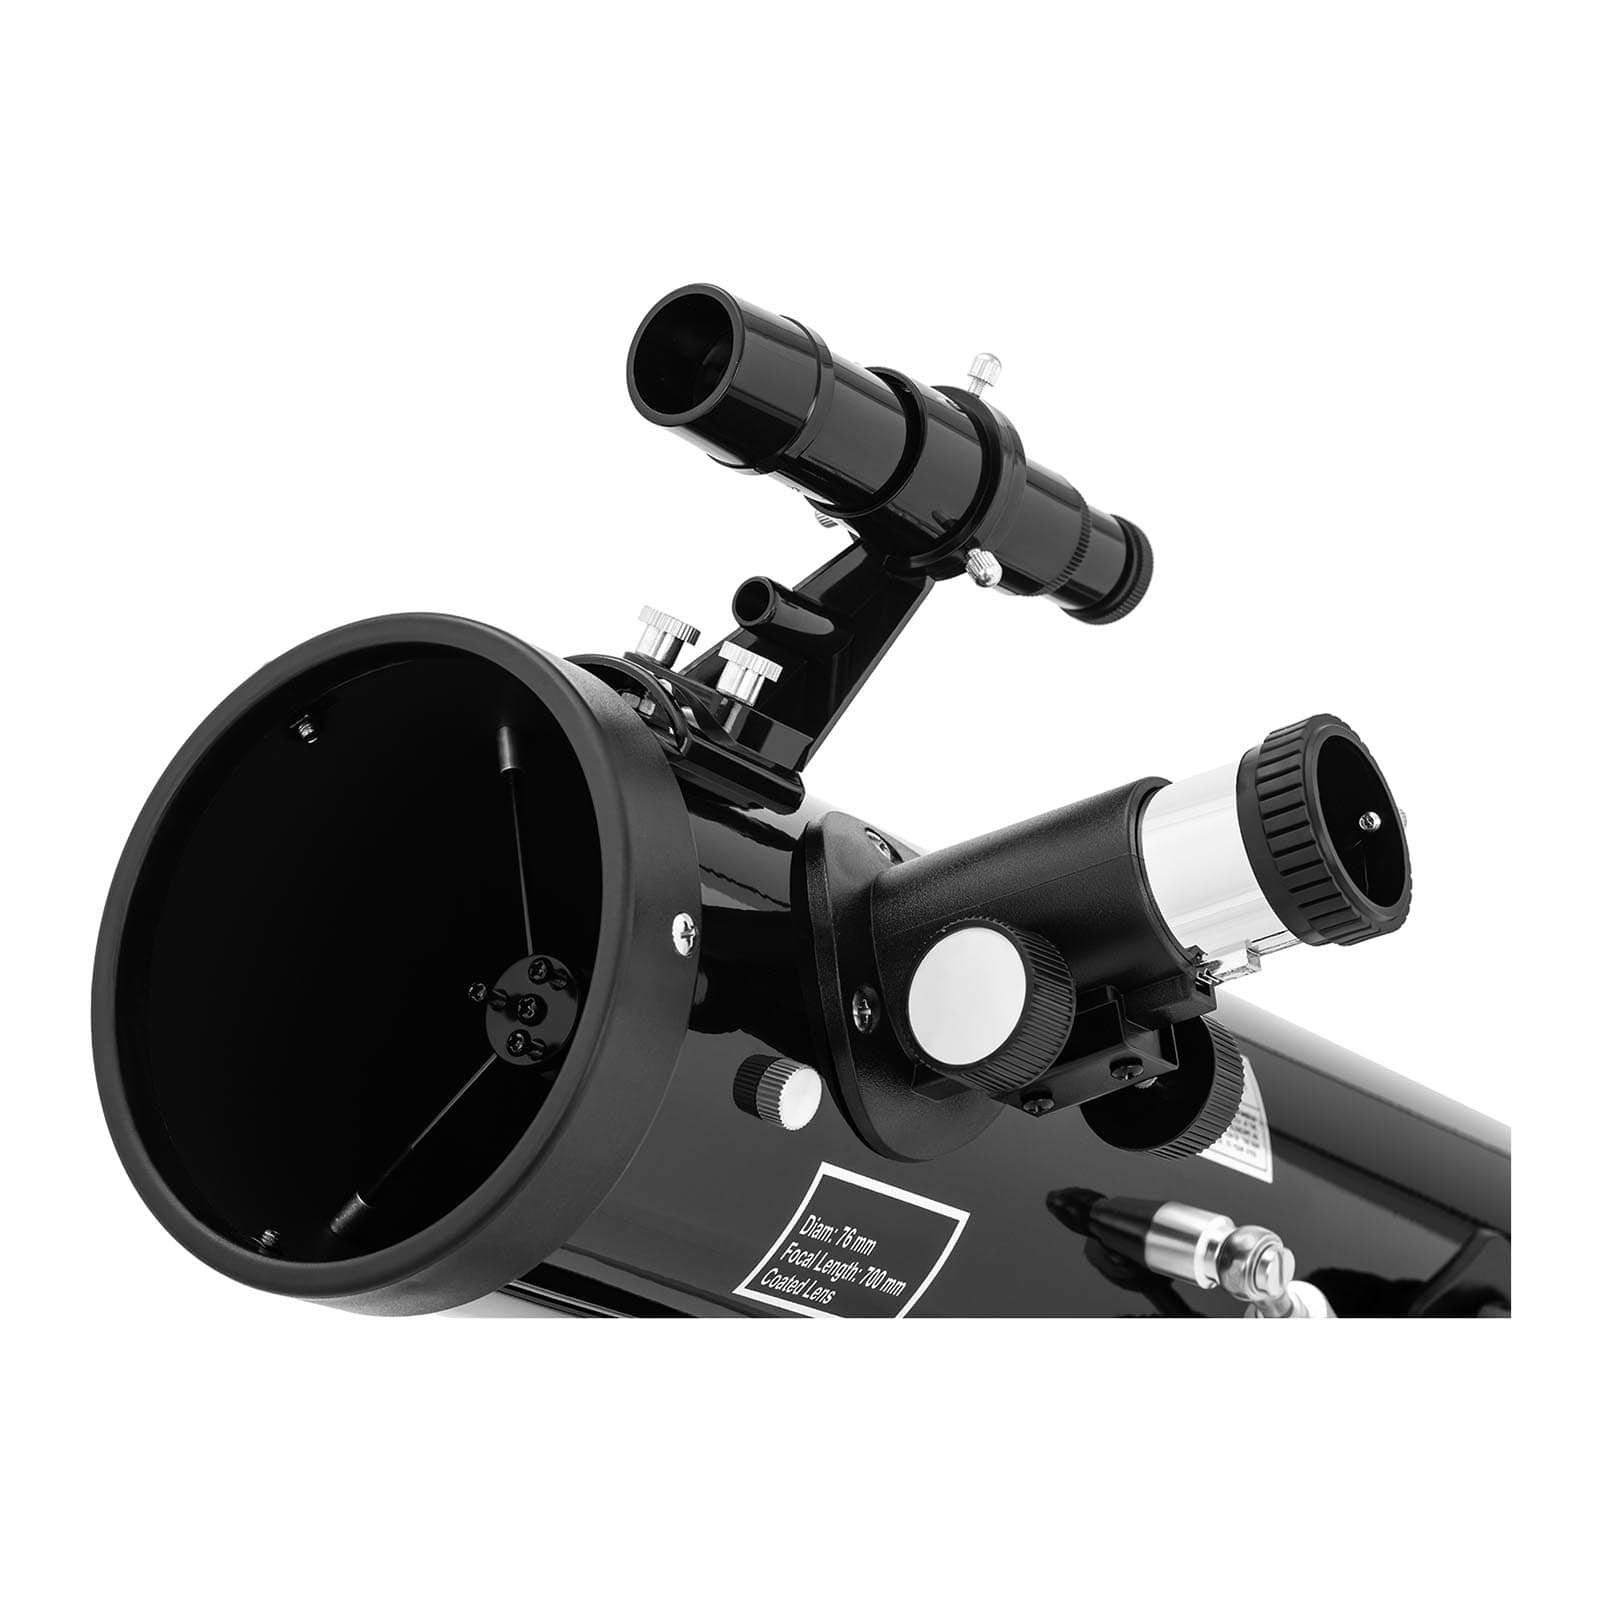 Uniprodo Teleskop Astronomie Einsteiger 700 Teleskop Reflektor Fernrohr Spiegelteleskop